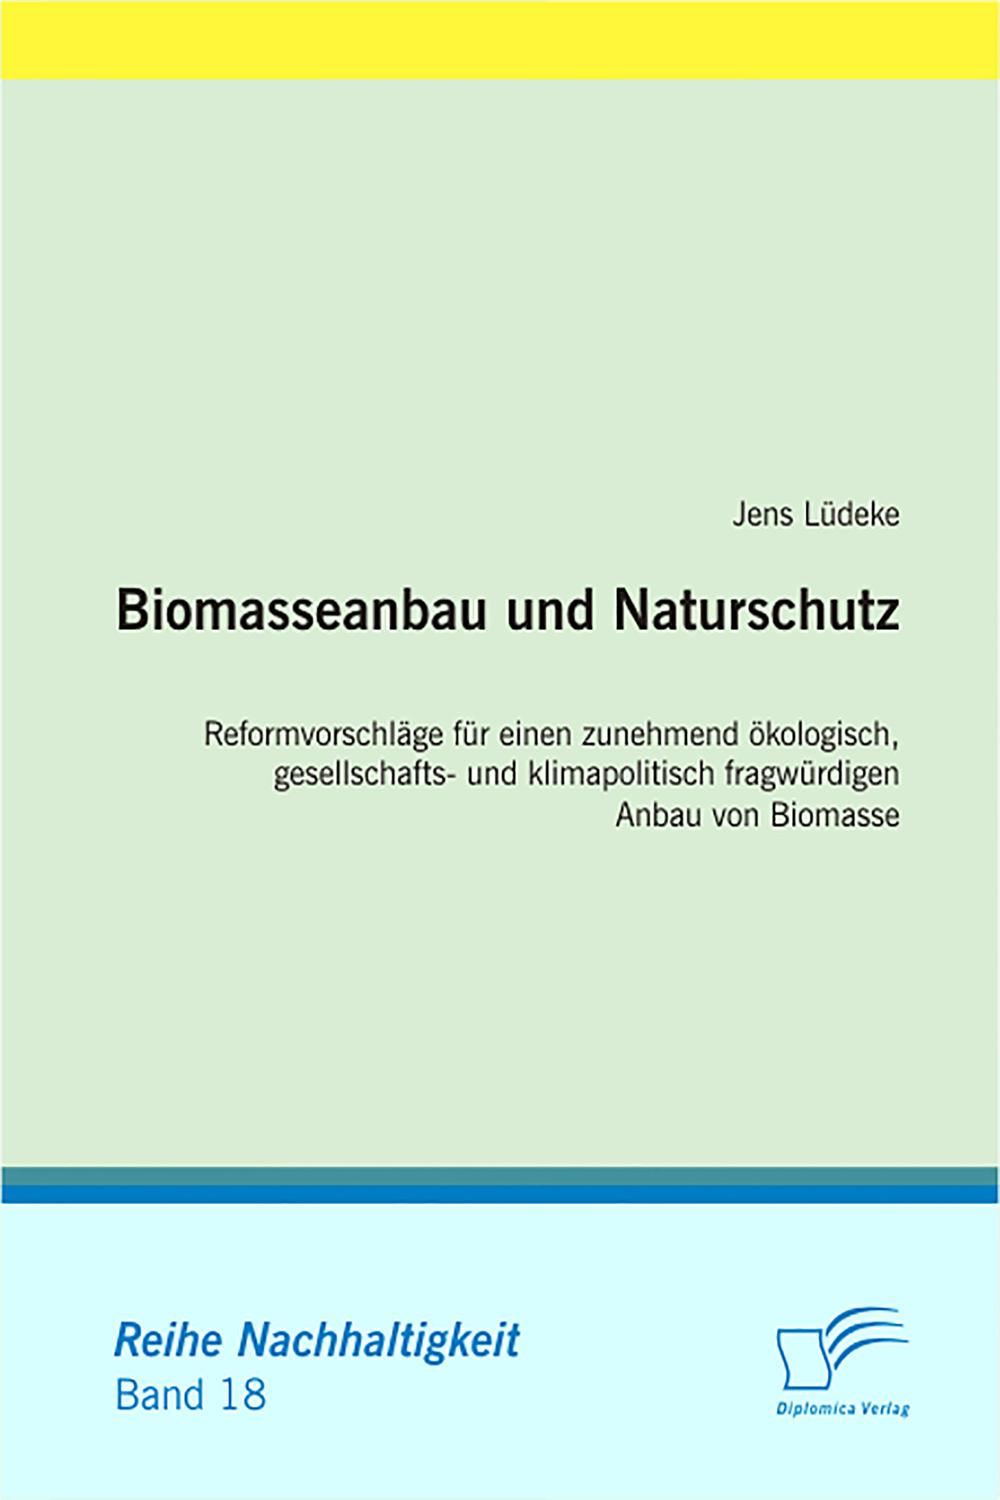 Biomasseanbau und Naturschutz - Jens Lüdeke